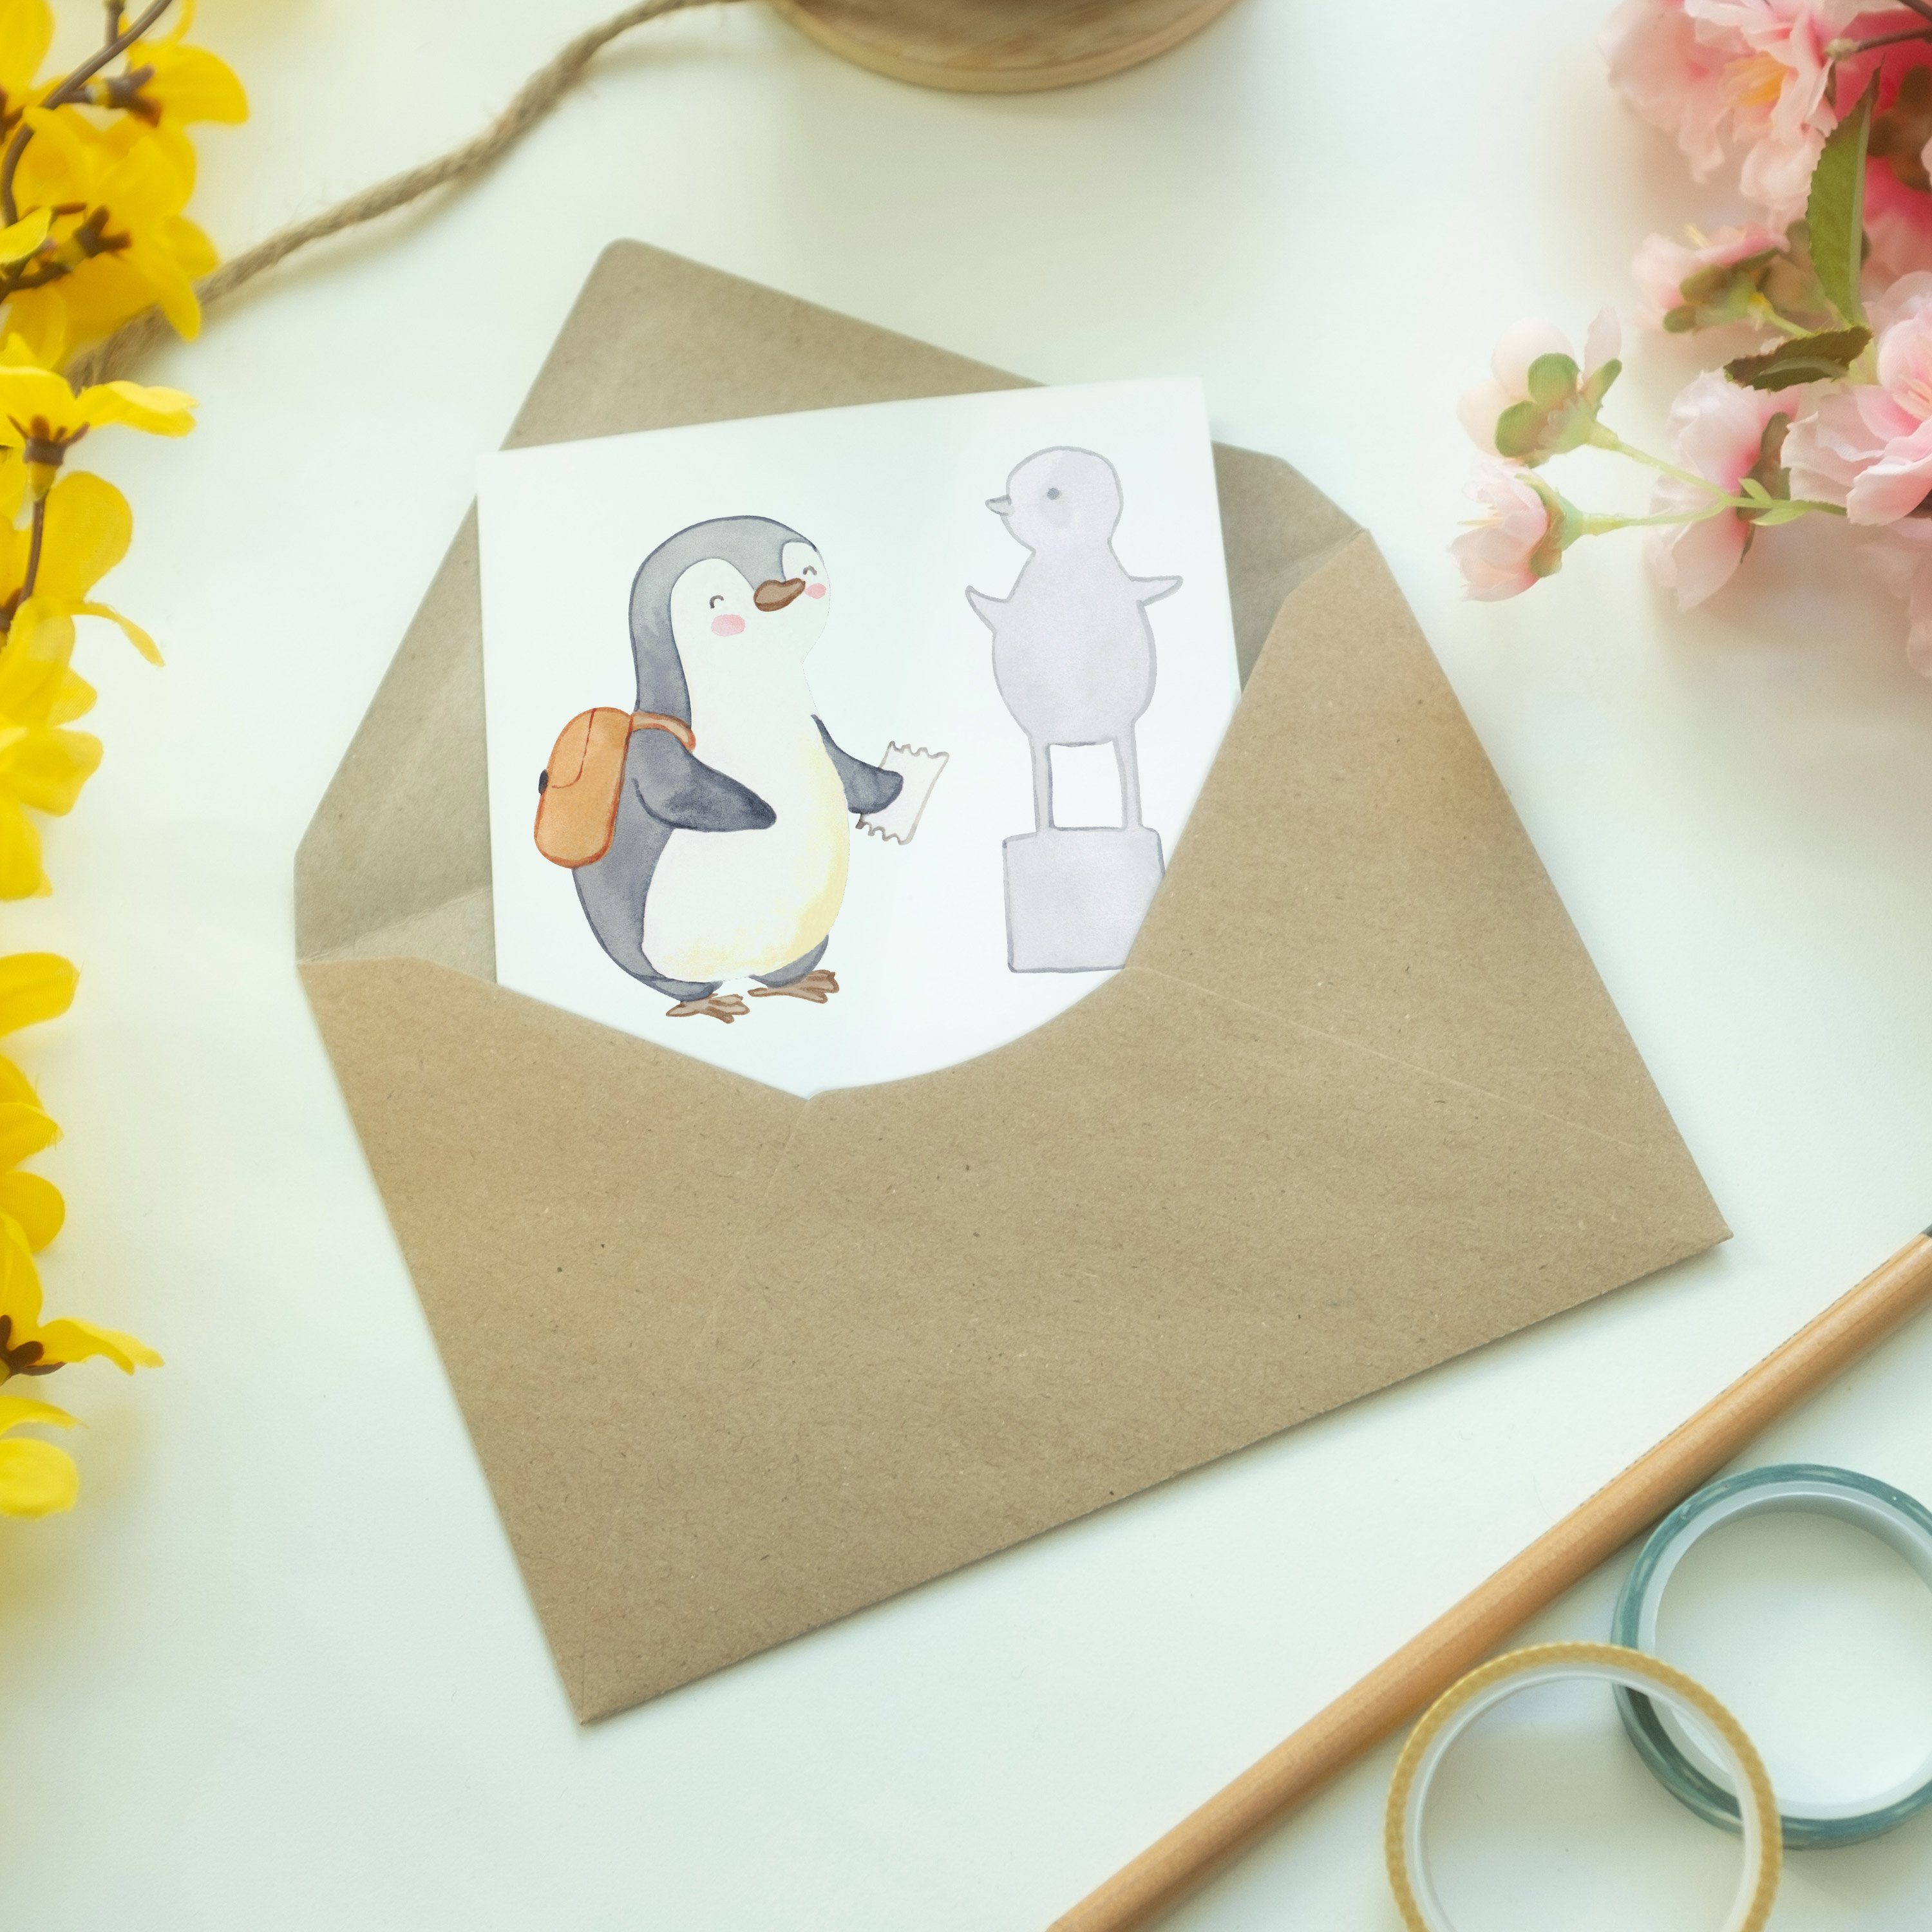 Schen Tage Hochzeitskarte, - Weiß Mr. Museum besuchen Grußkarte Pinguin - Geschenk, Panda Mrs. &